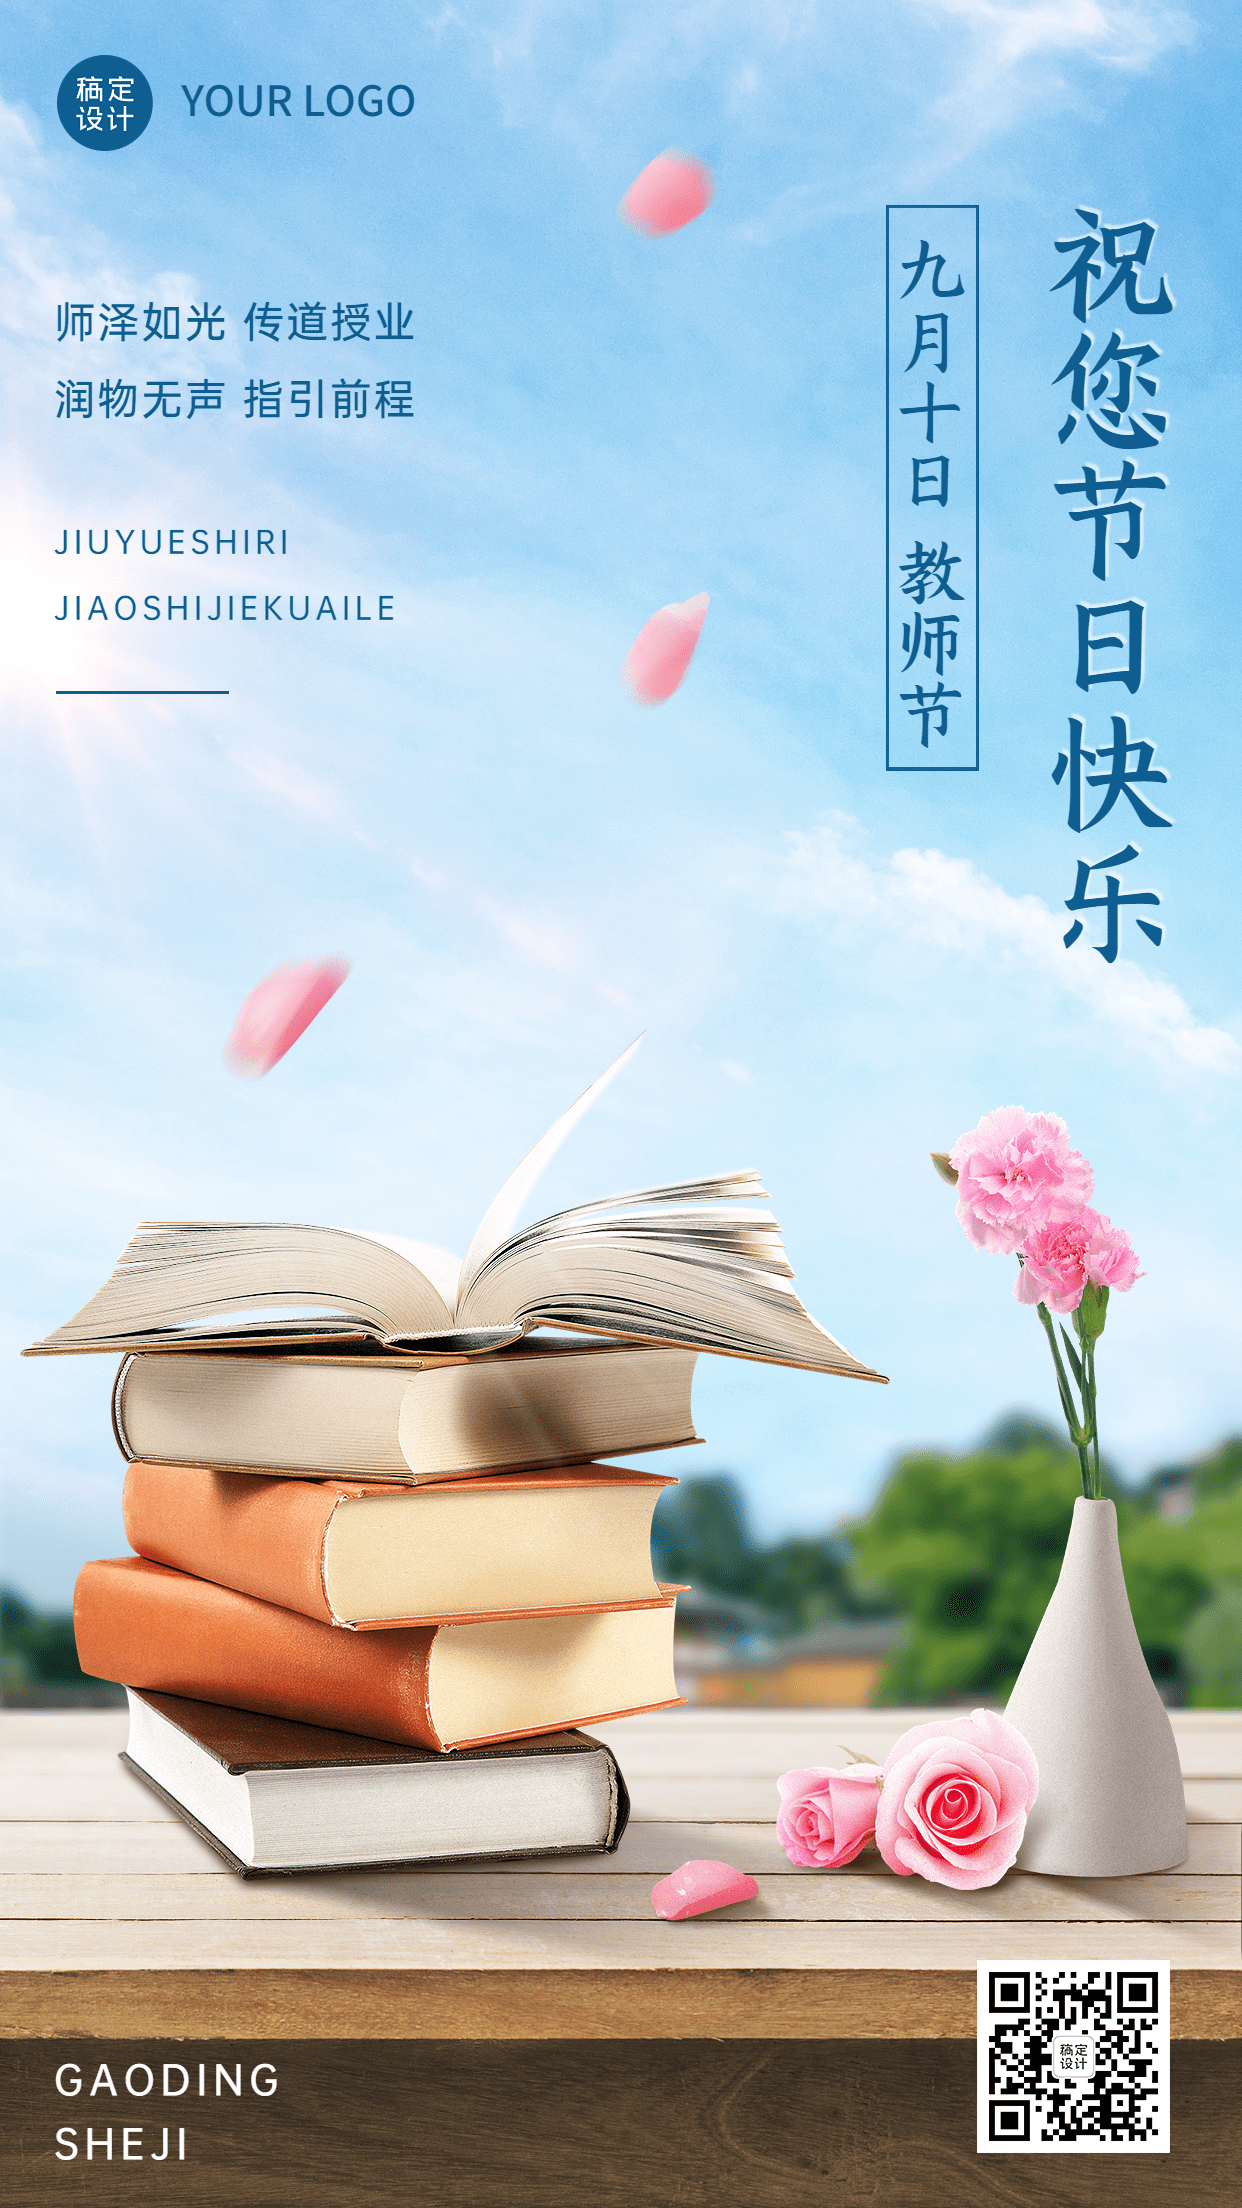 教育培训教师节节日祝福文艺合成手机海报